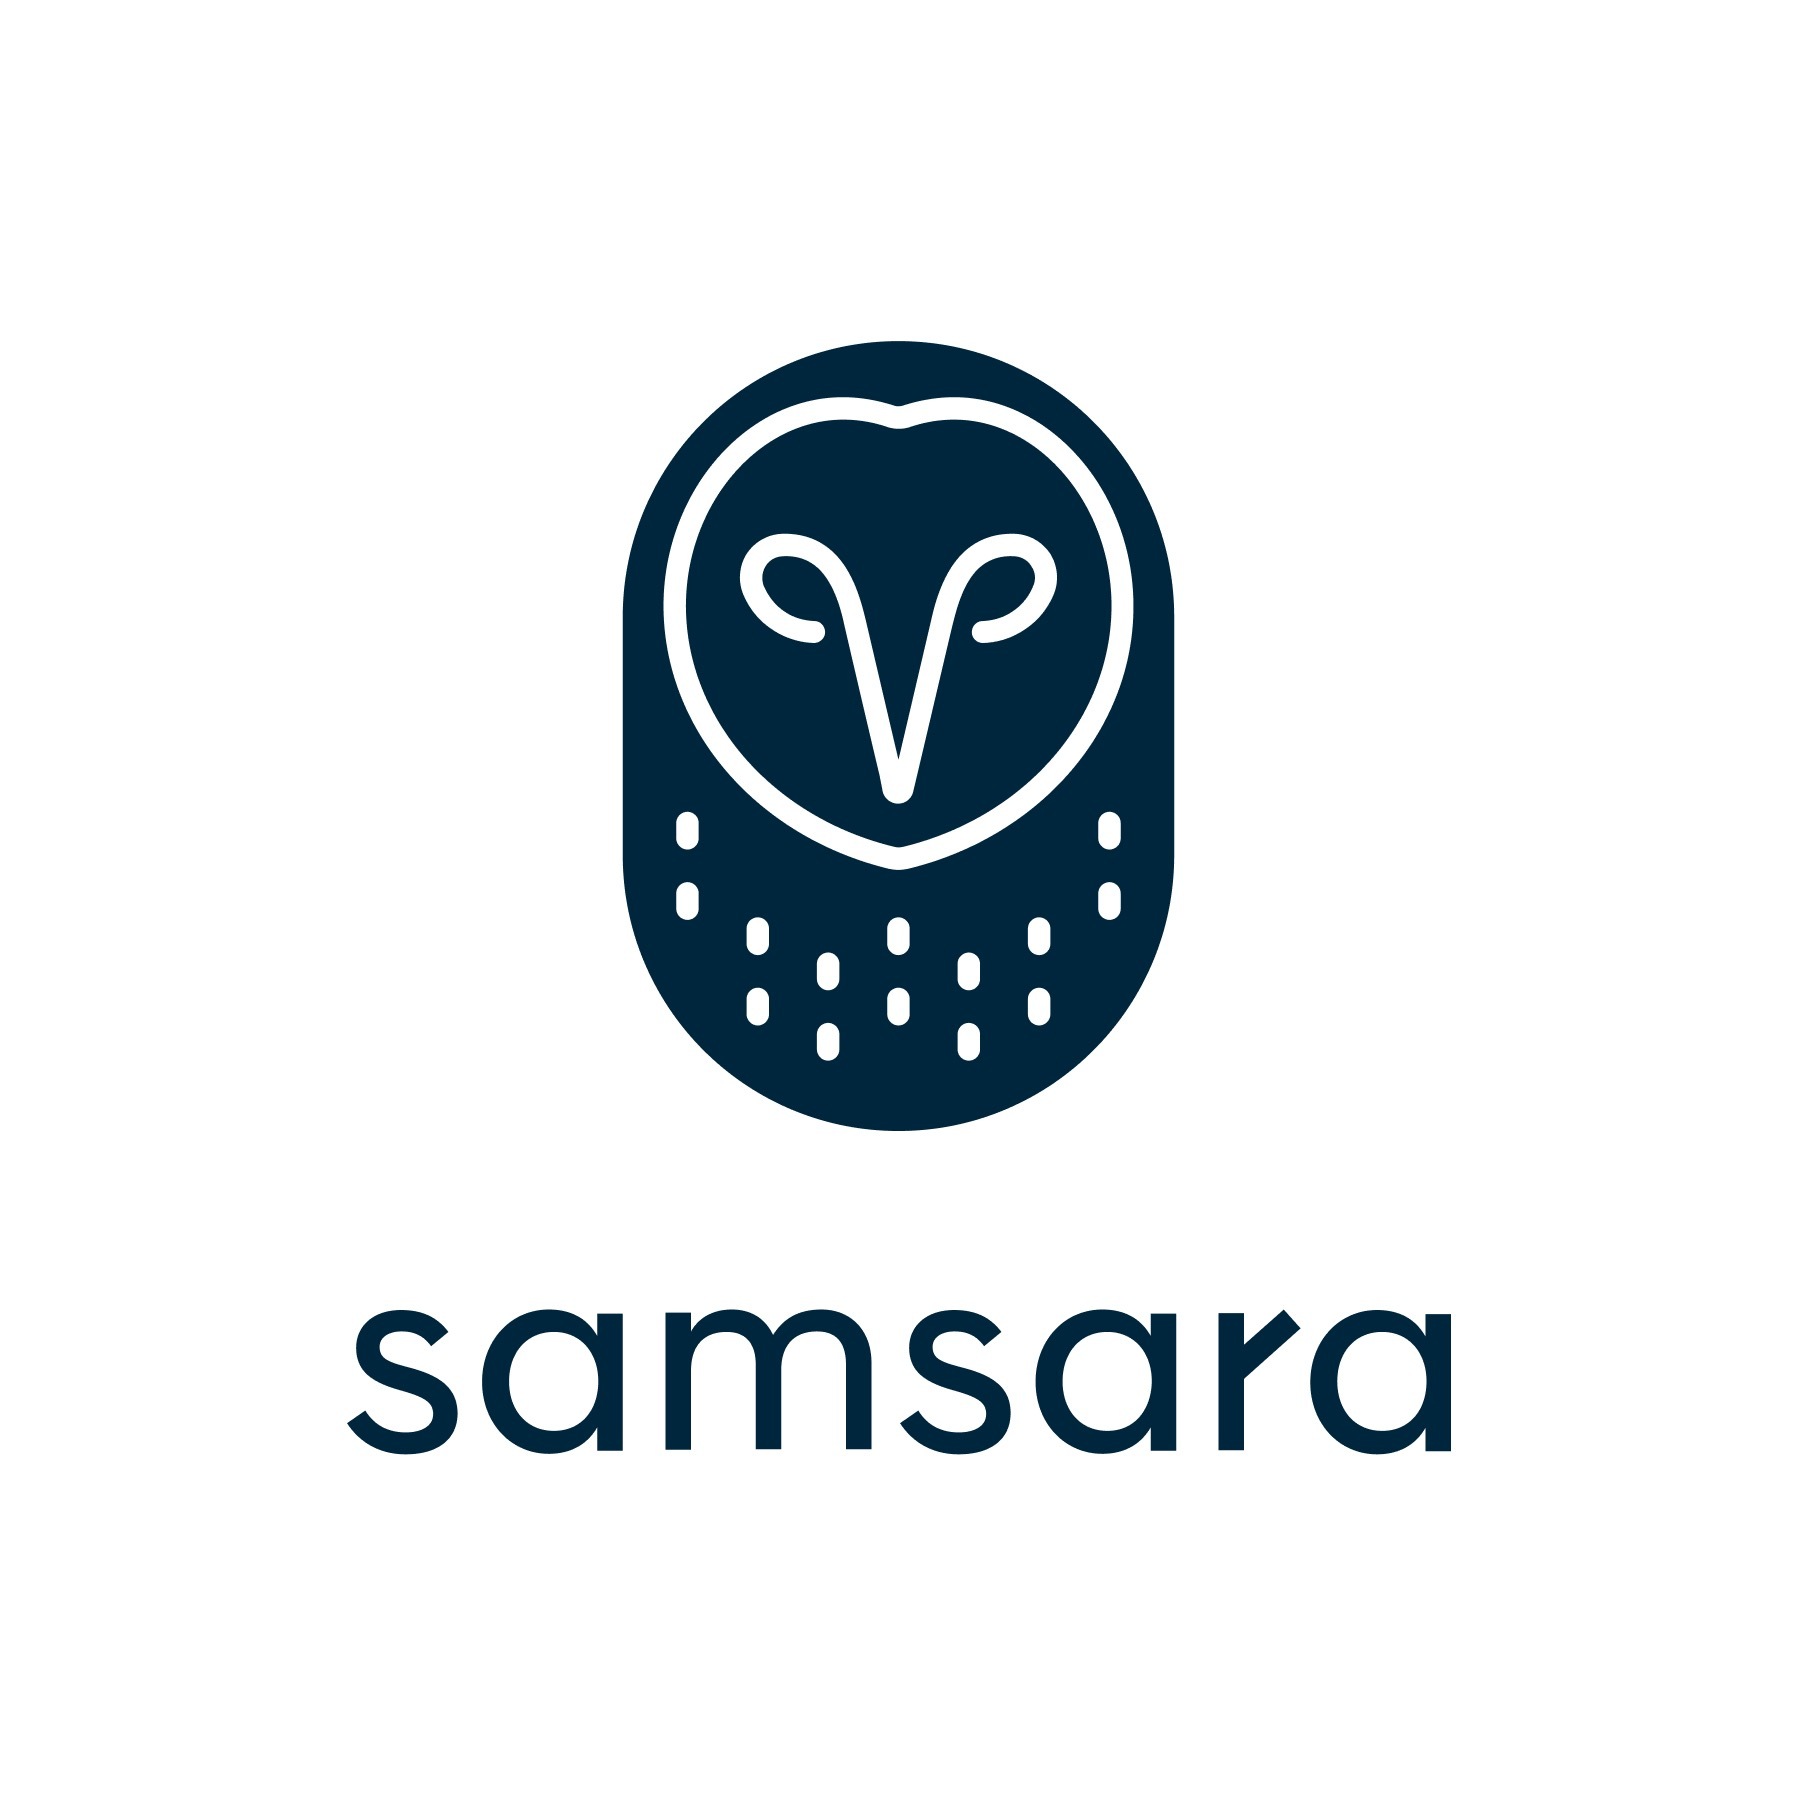 samsara_logo.jpg